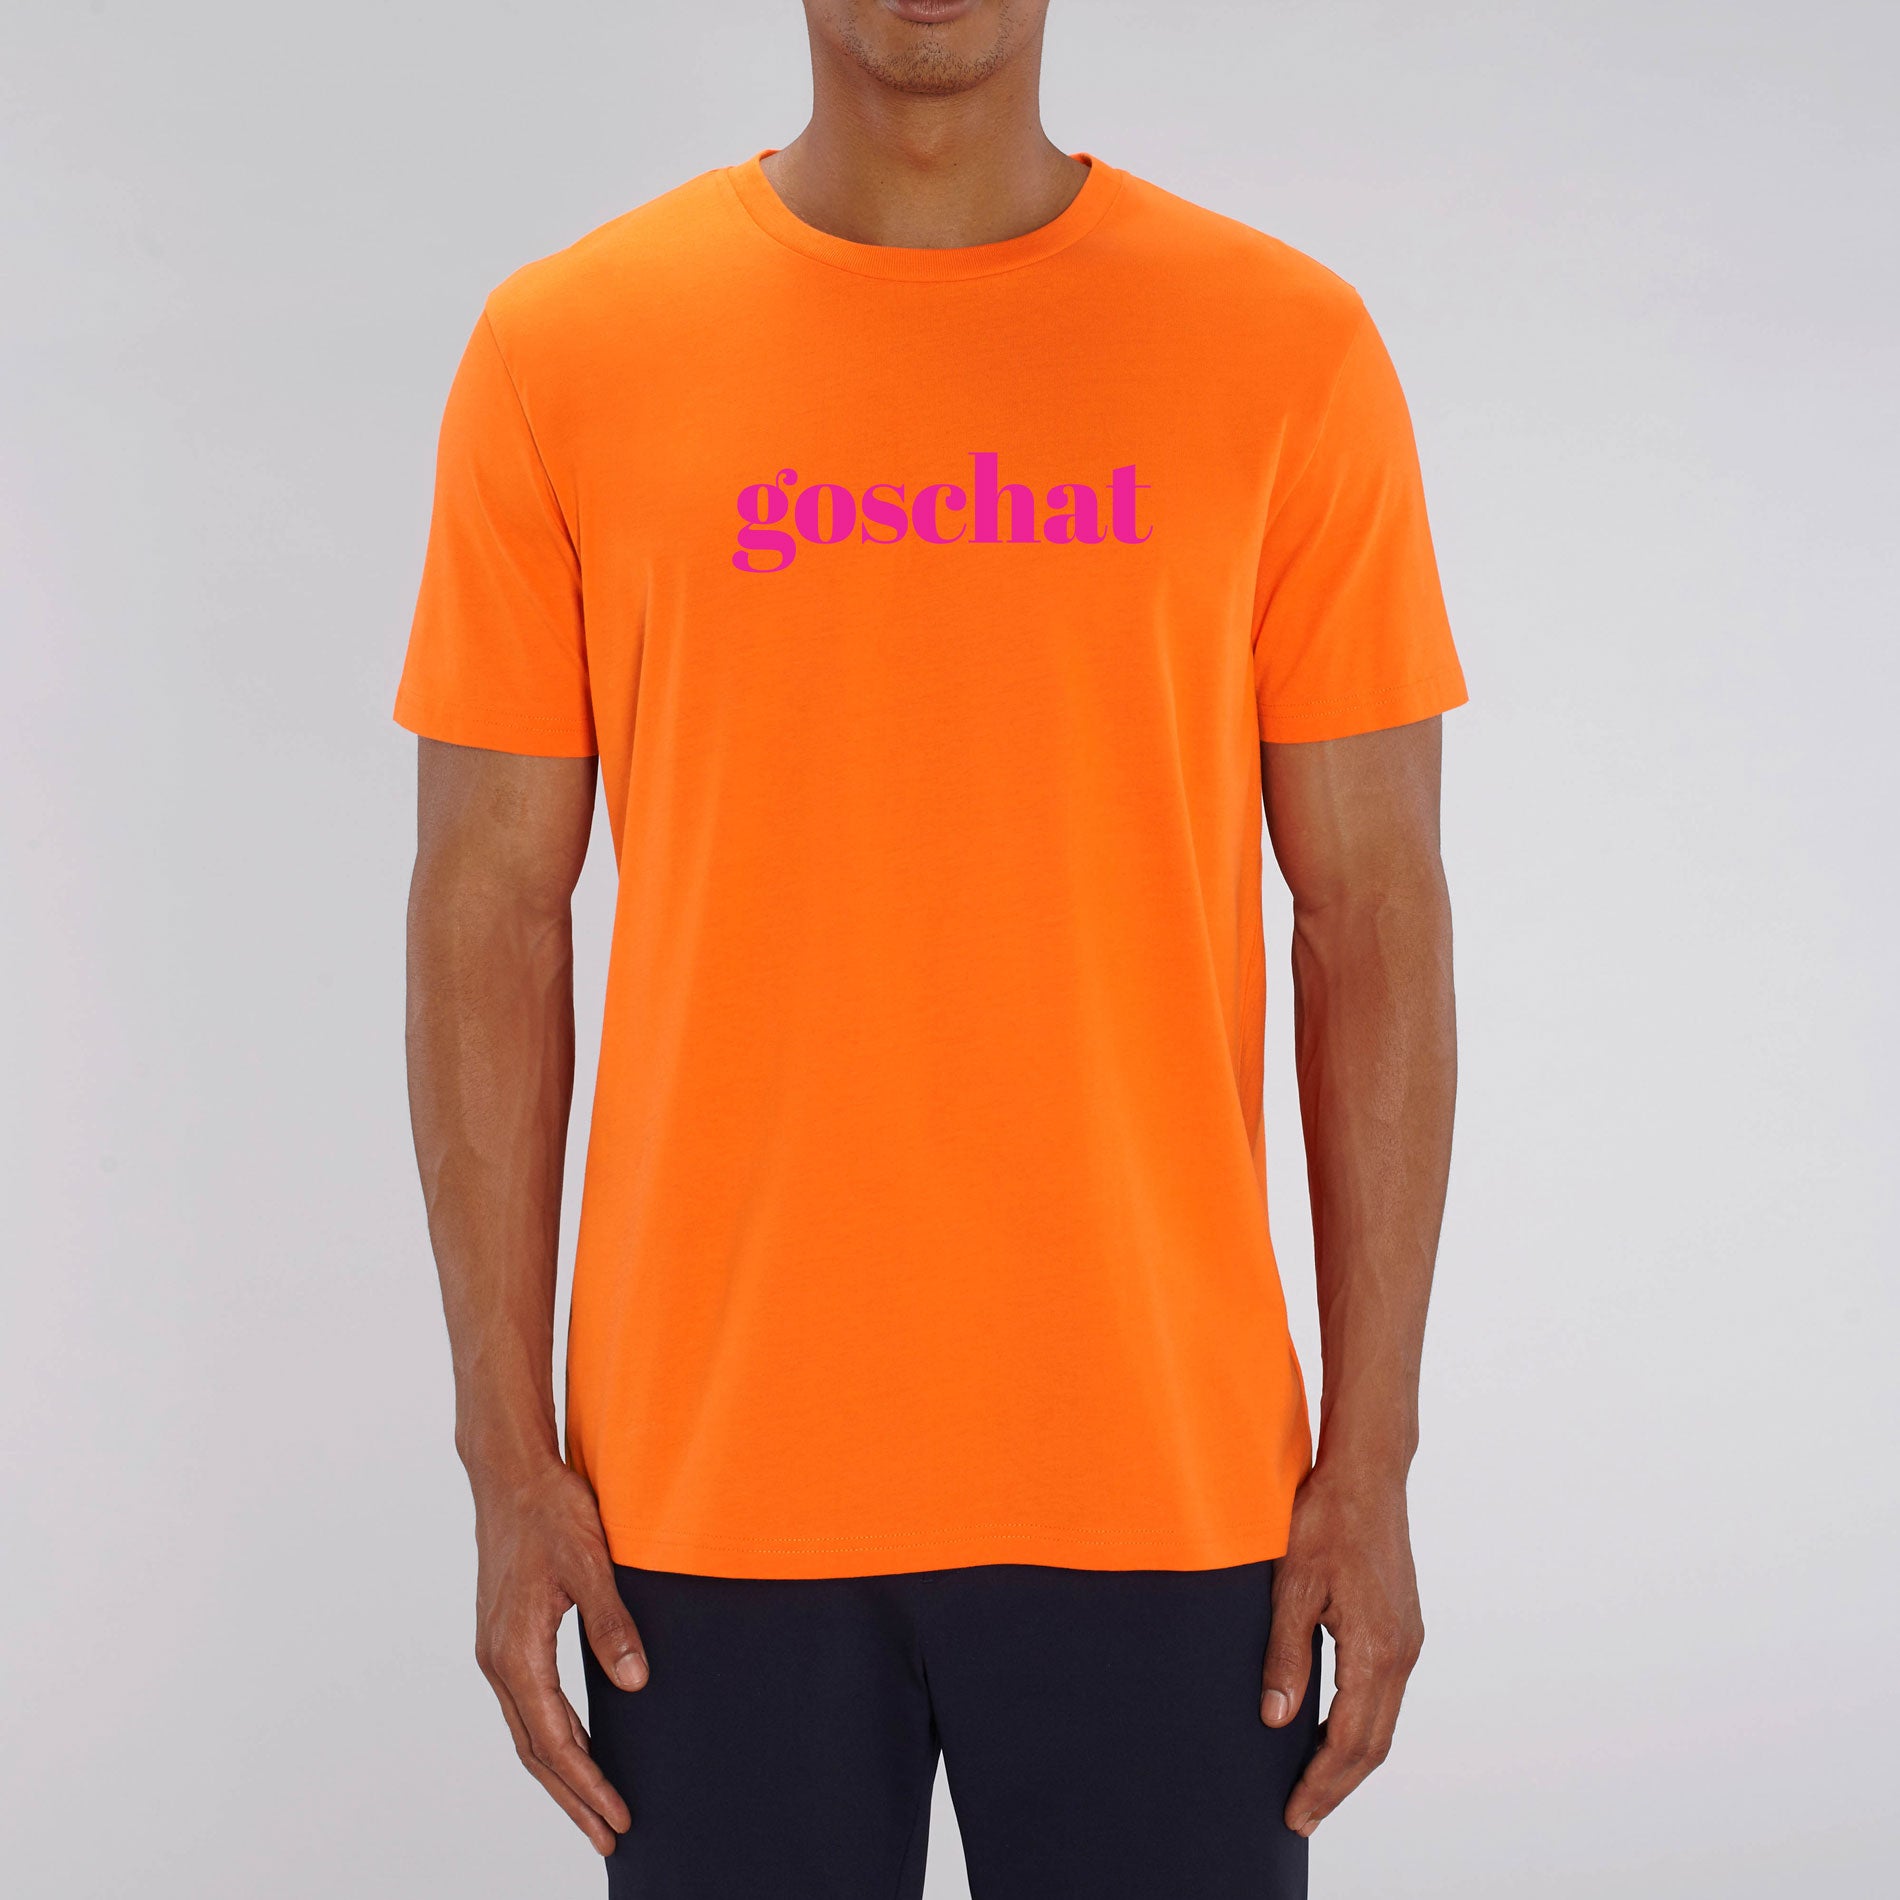 BUSSI DELUXE knallorange GOSCHAT T-Shirt - & neonpink